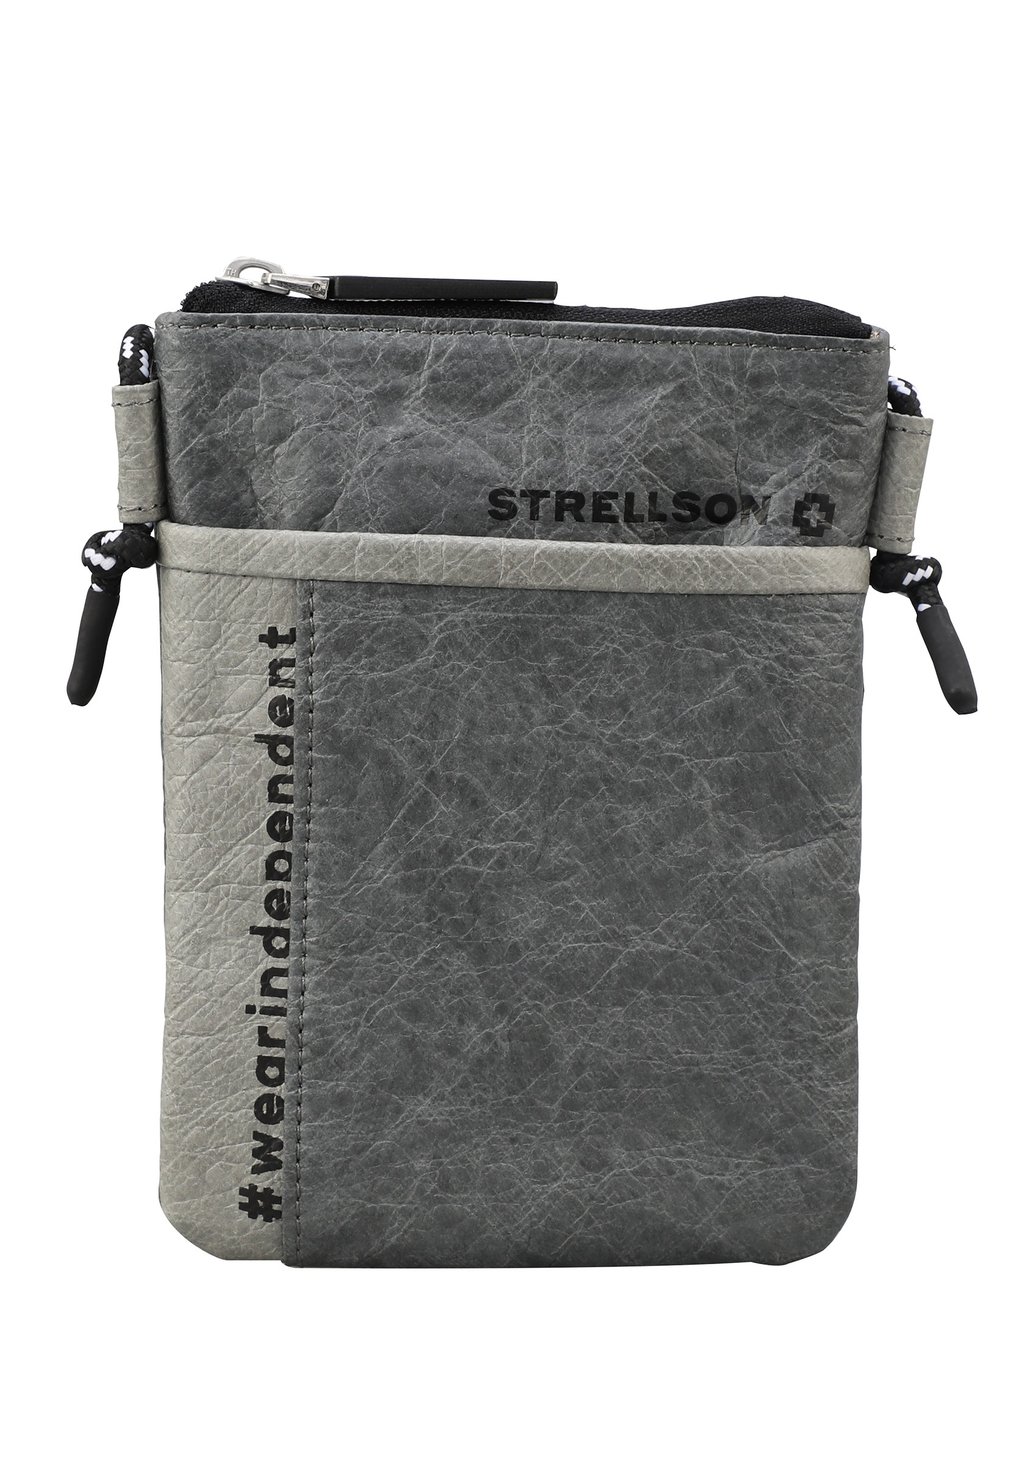 Сумка через плечо WESTBOURNE WYATT Strellson Premium, цвет darkgrey сумка через плечо strellson premium цвет darkgrey